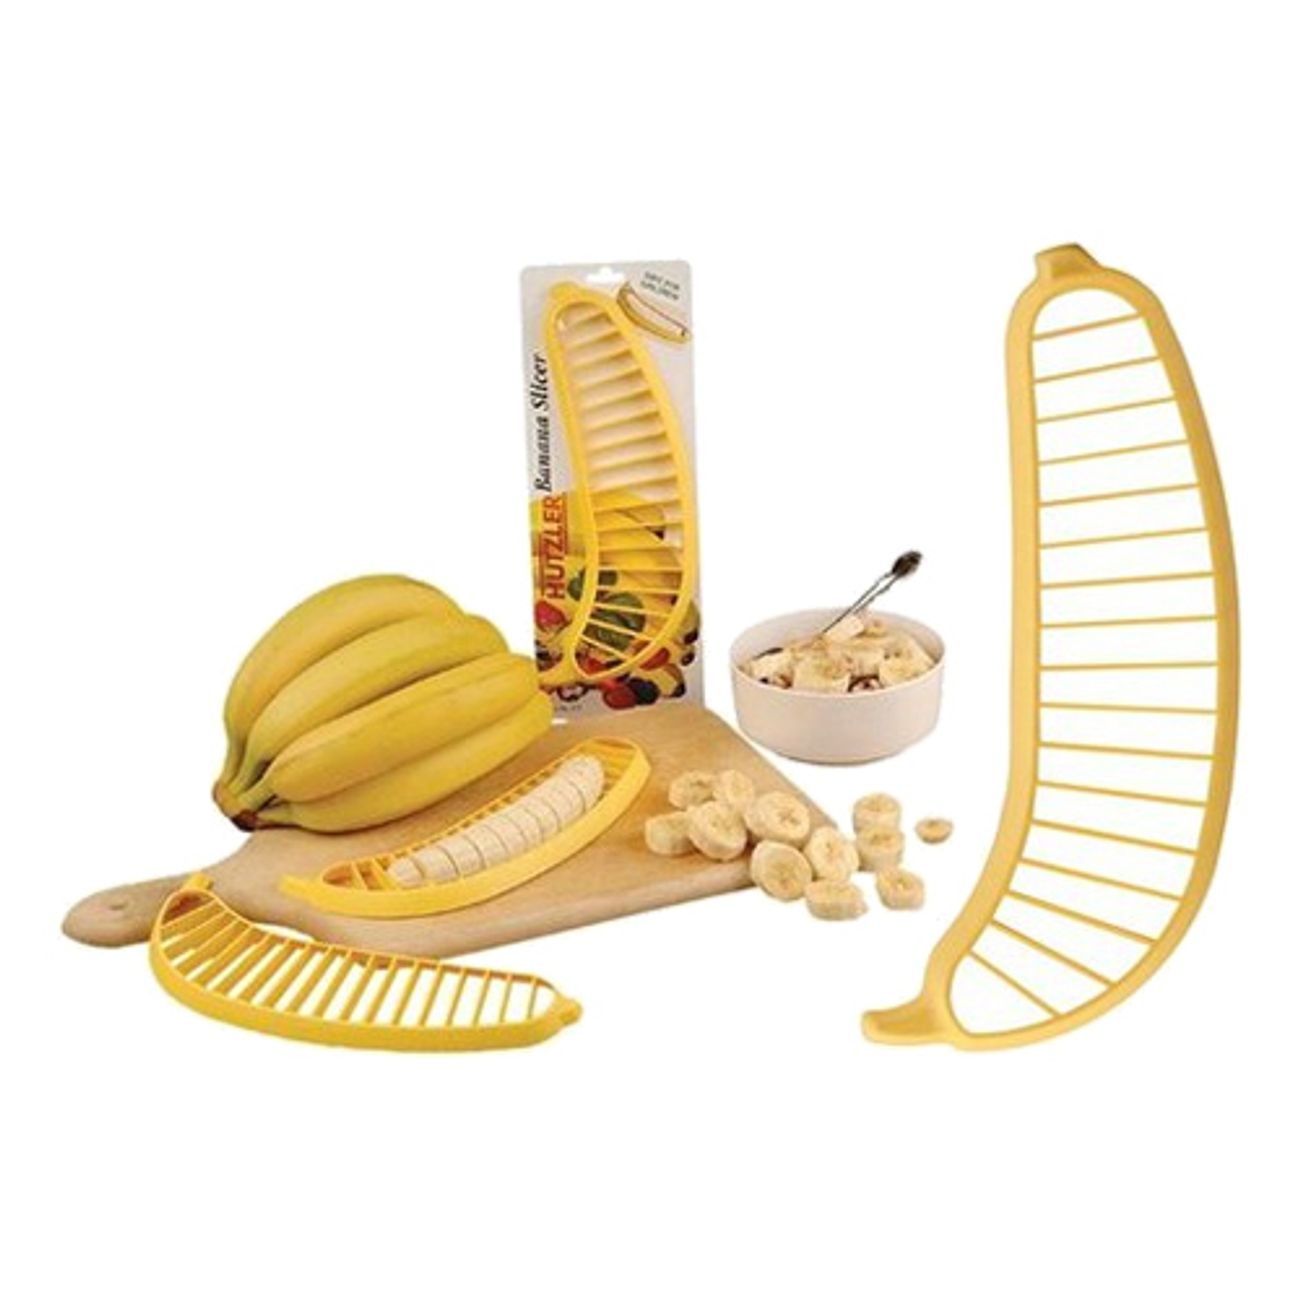 banana-slicer-1